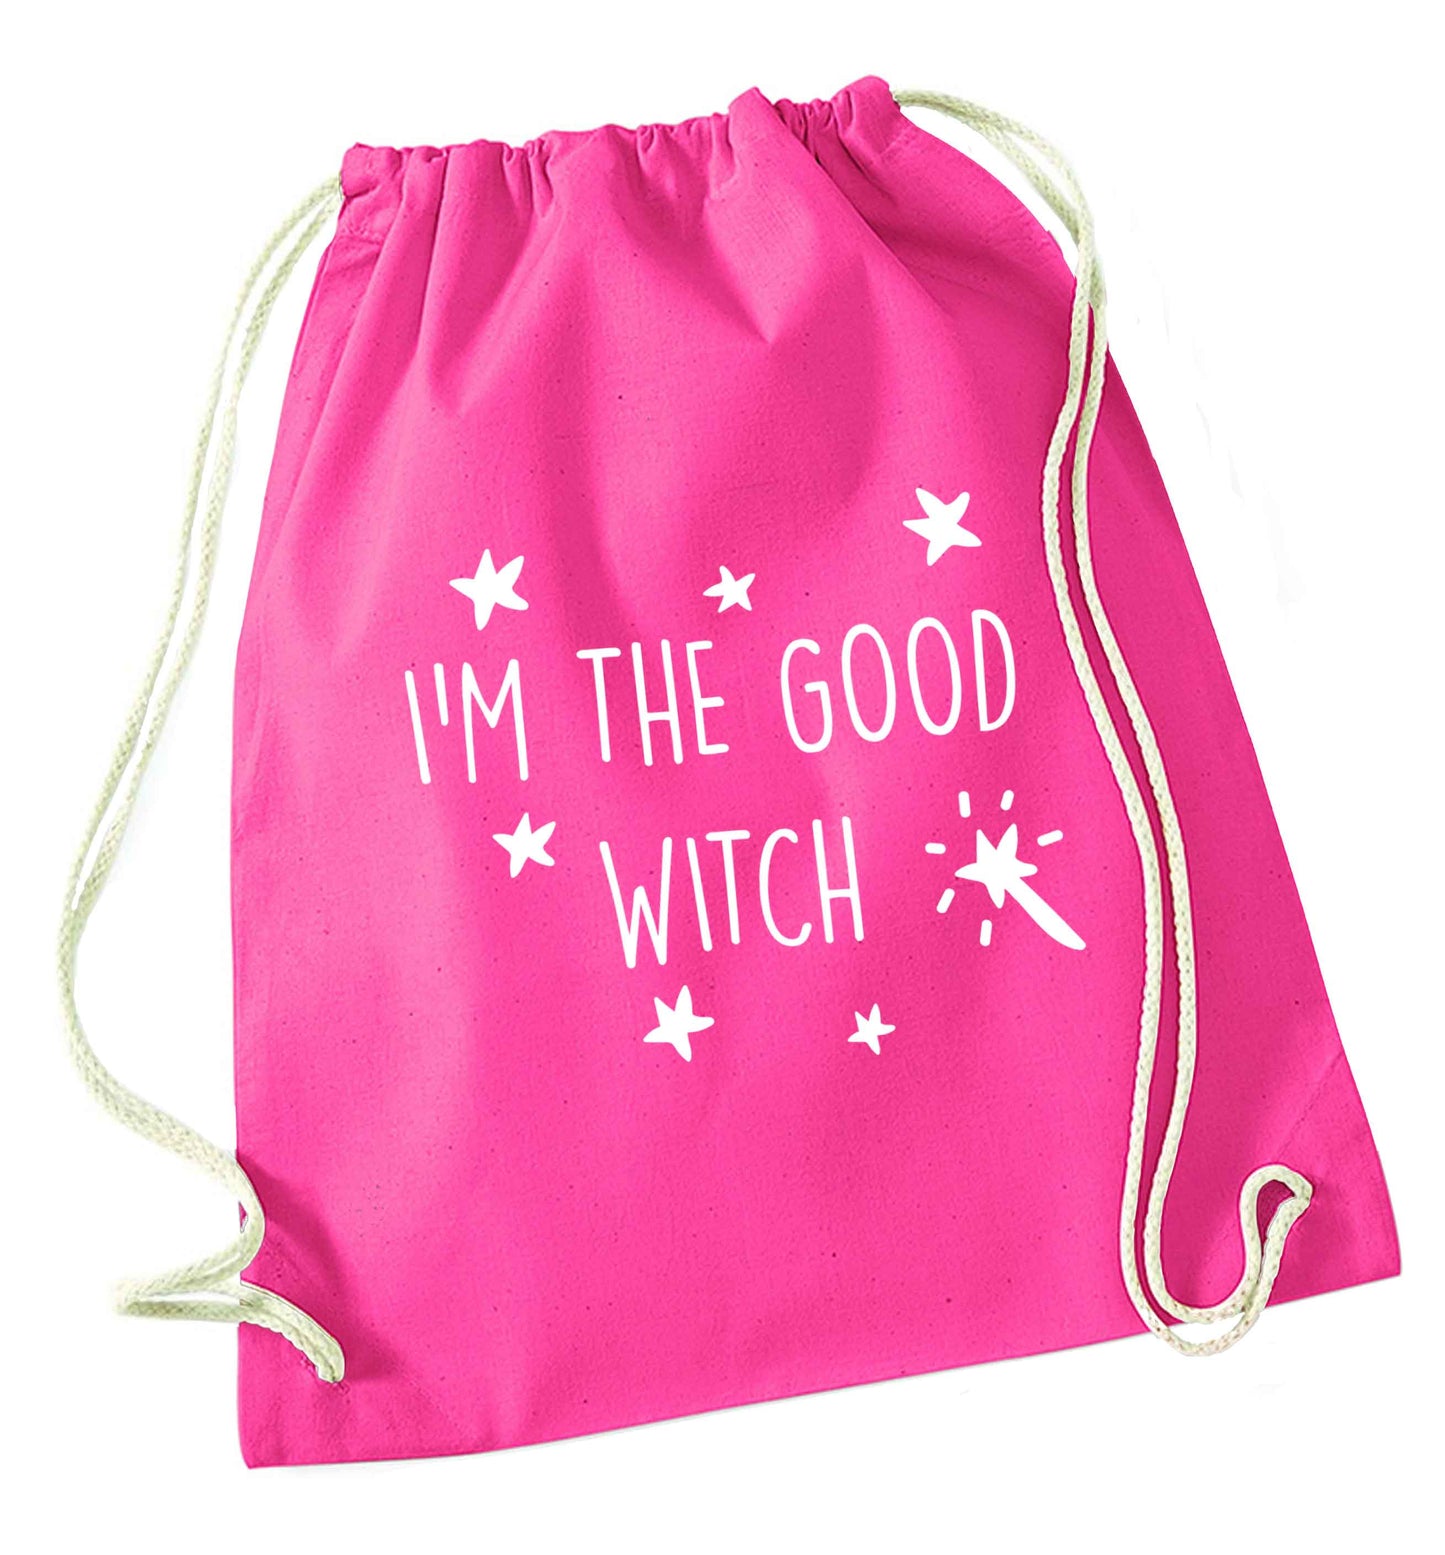 Good witch pink drawstring bag